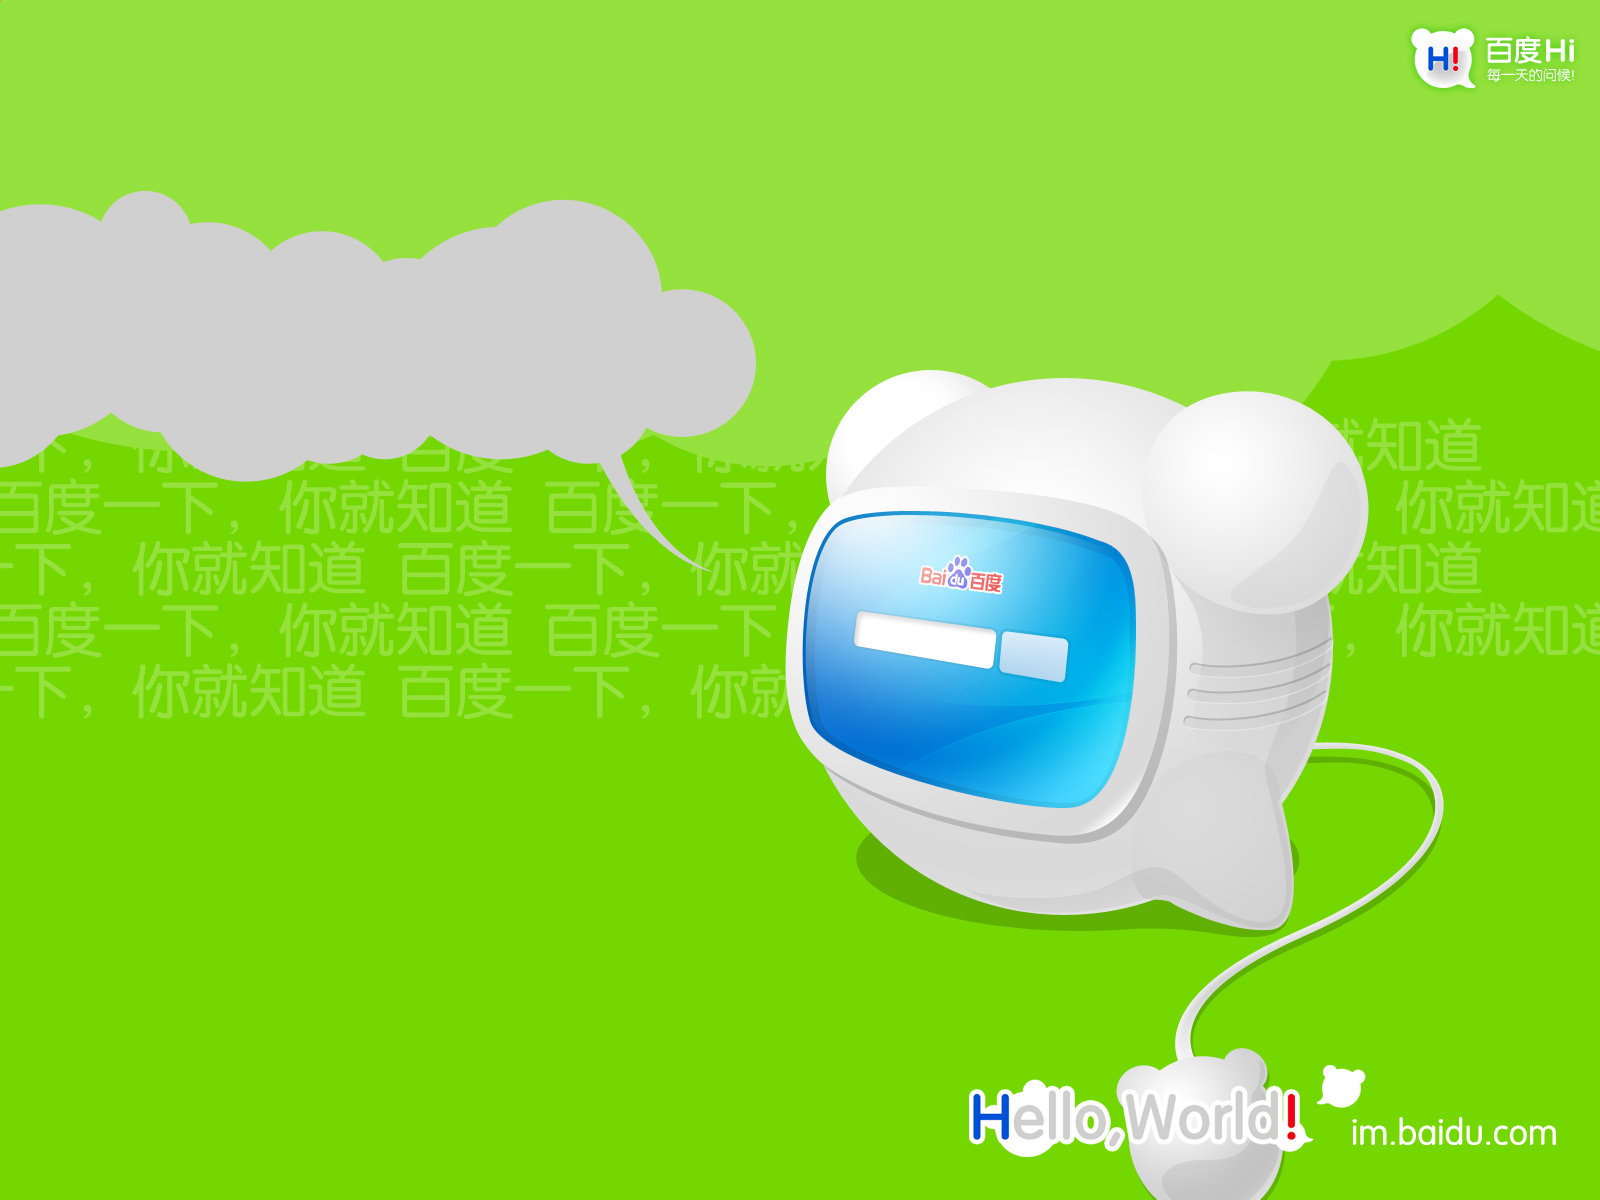 Meilleurs fonds d'écran Baidu_Salut pour l'écran du téléphone